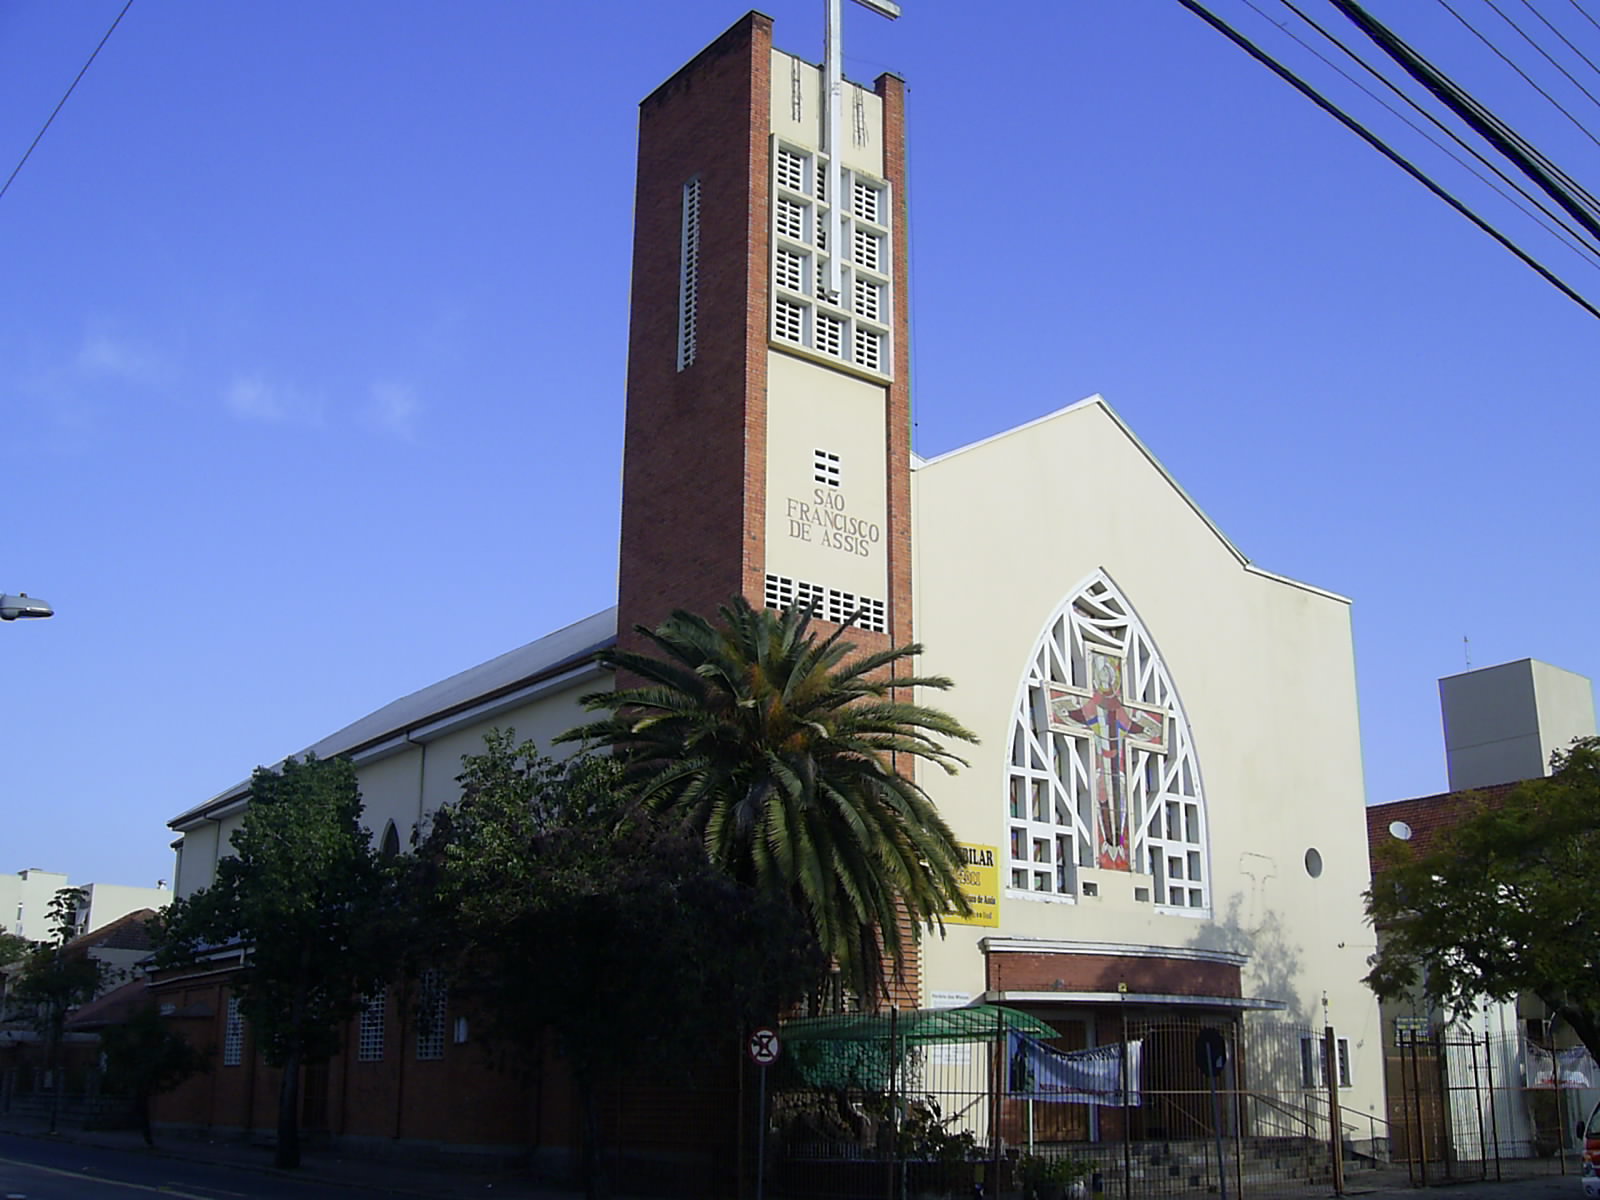 Resultado de imagem para Igreja São Francisco de Assis porto alegre rs